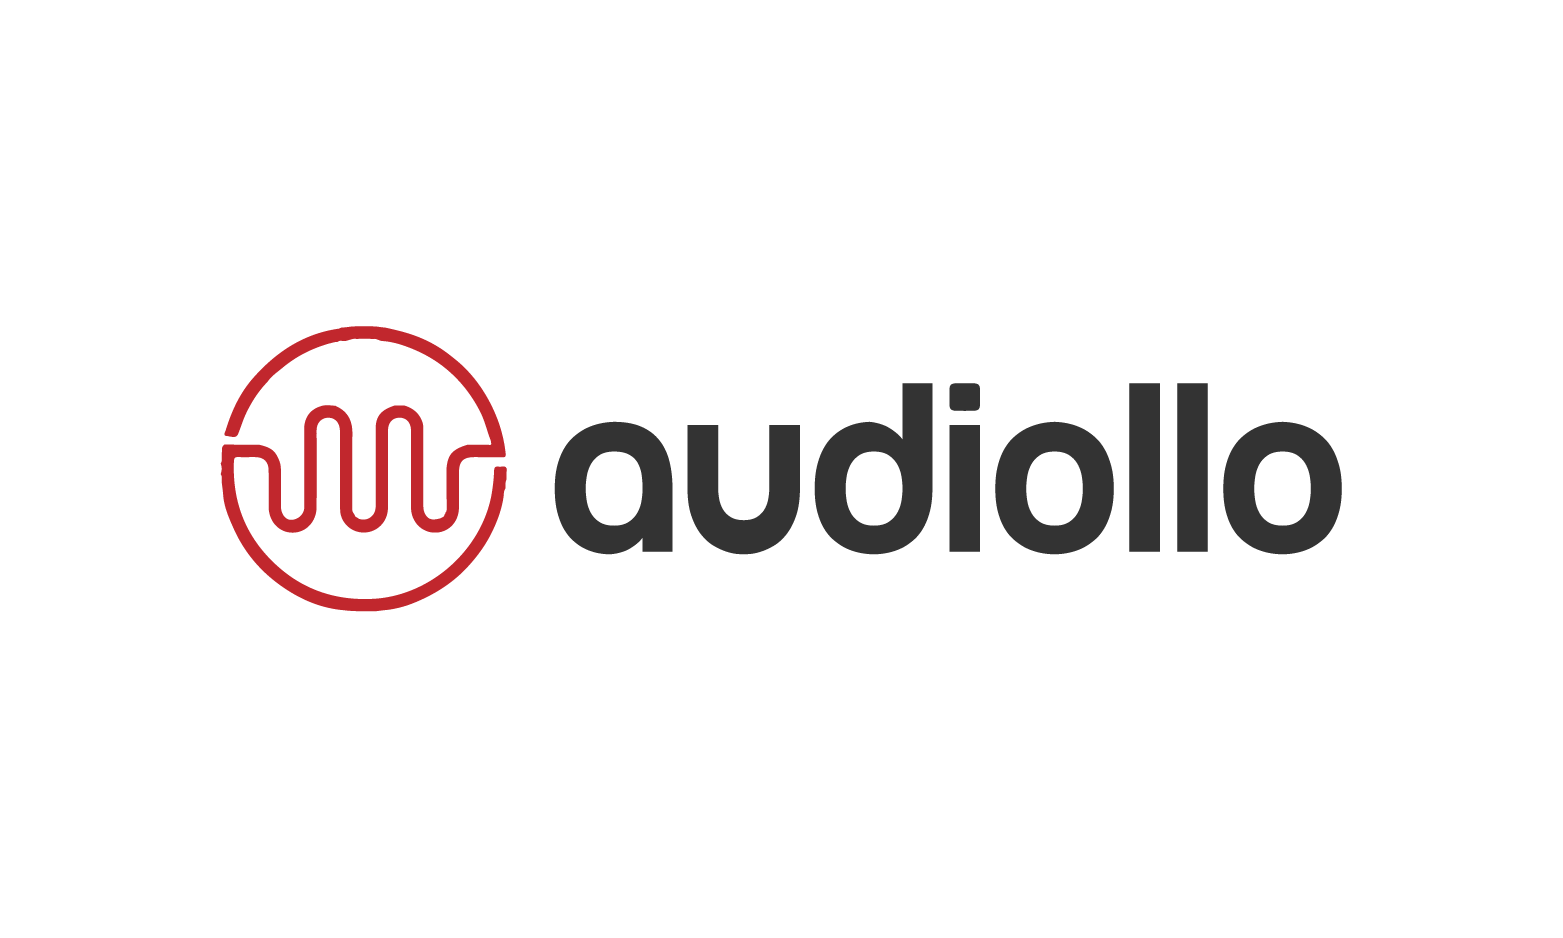 Audiollo.com - Creative brandable domain for sale